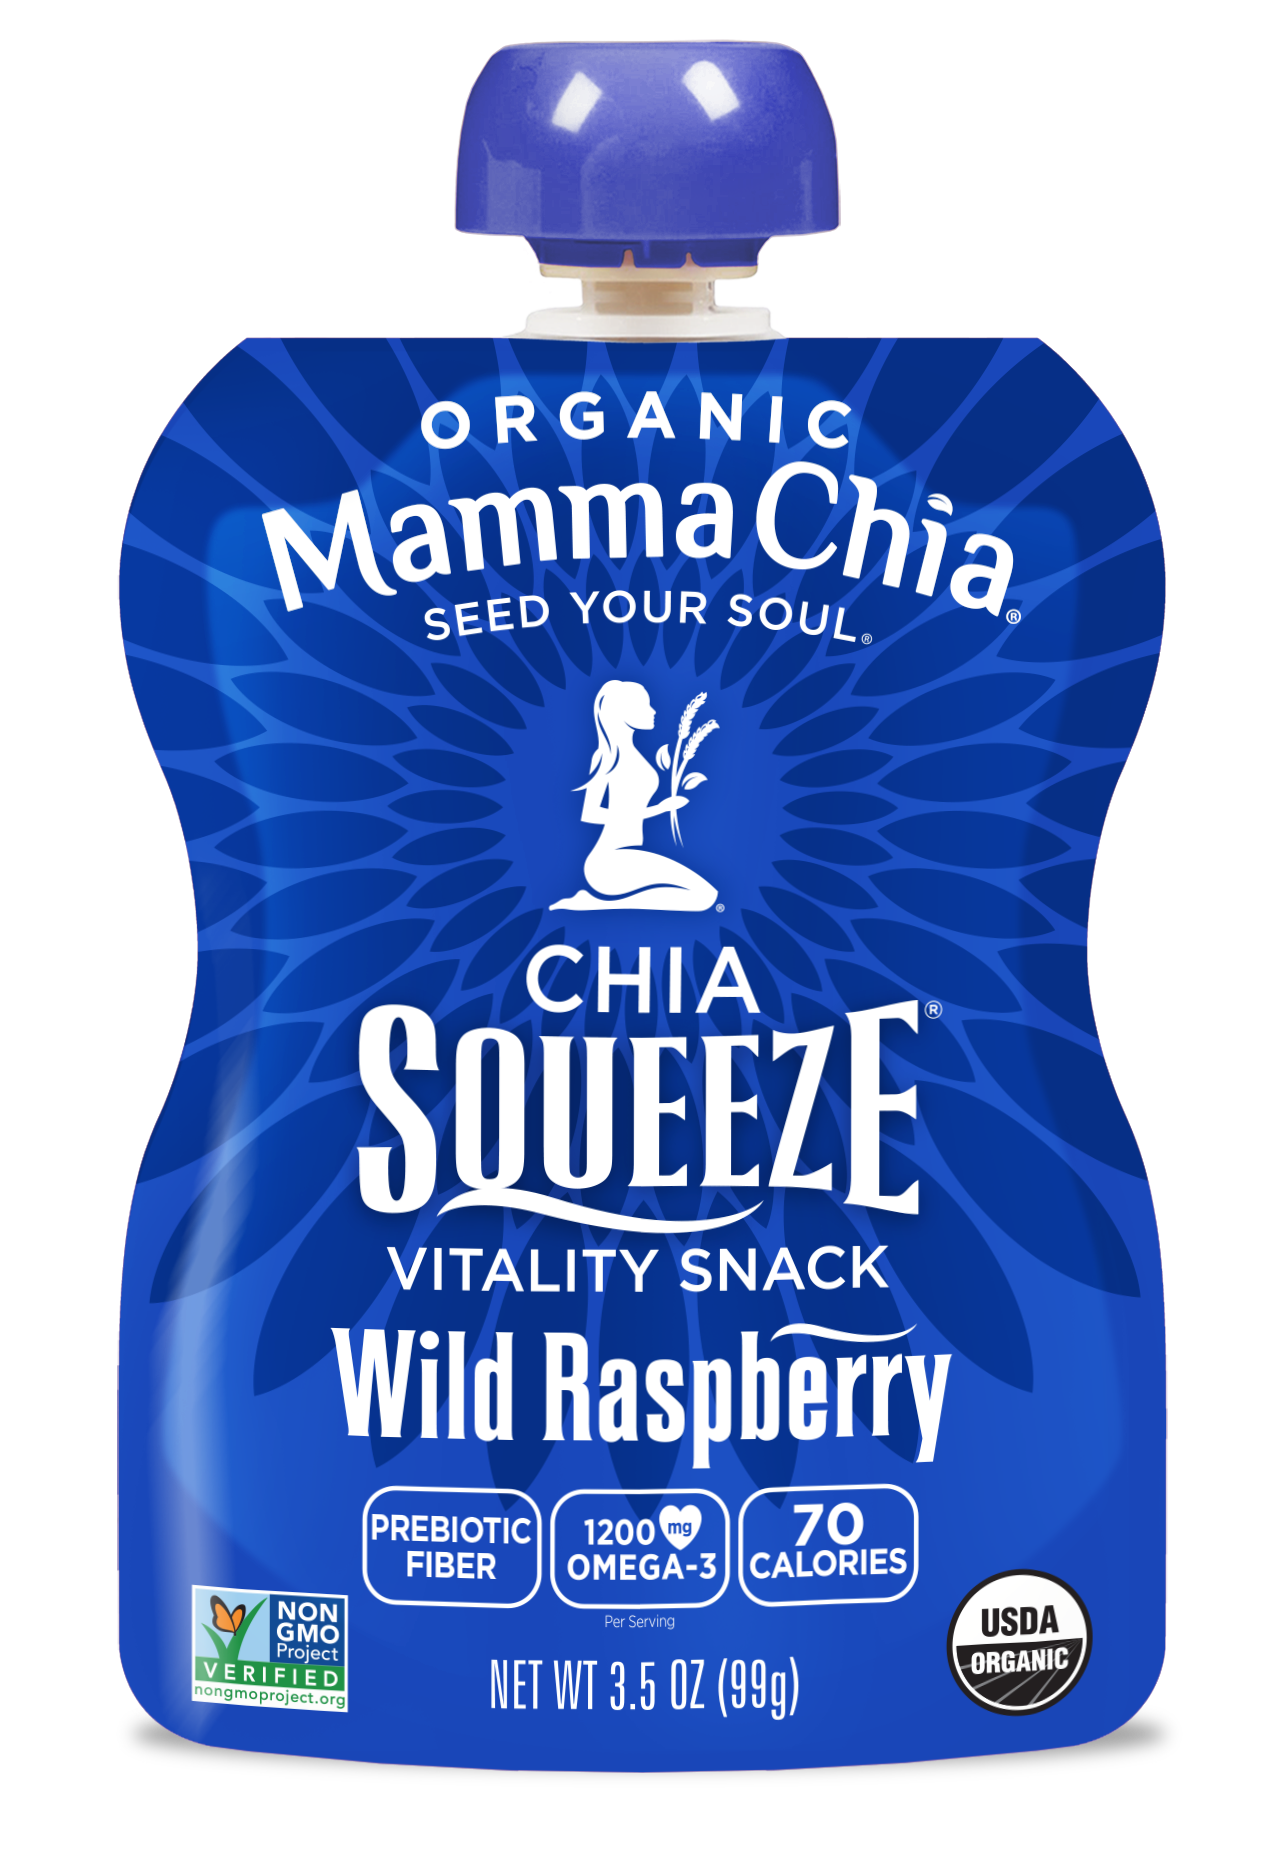 Mamma Chia Wild Raspberry Organic Chia Squeeze 2 innerpacks per case 28.0 oz